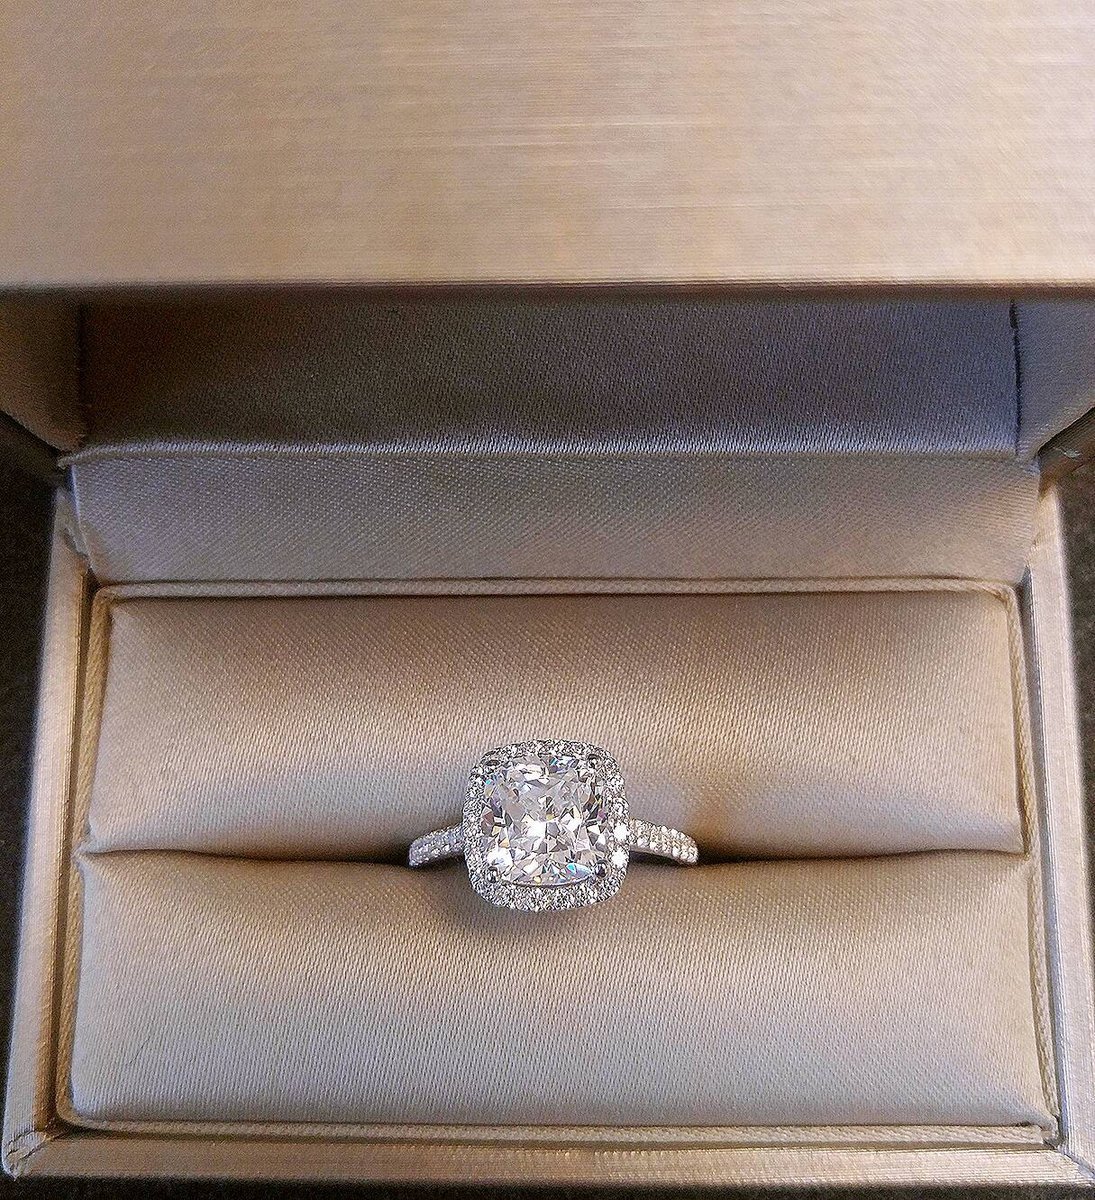 Бриллиантовое кольцо в коробочке